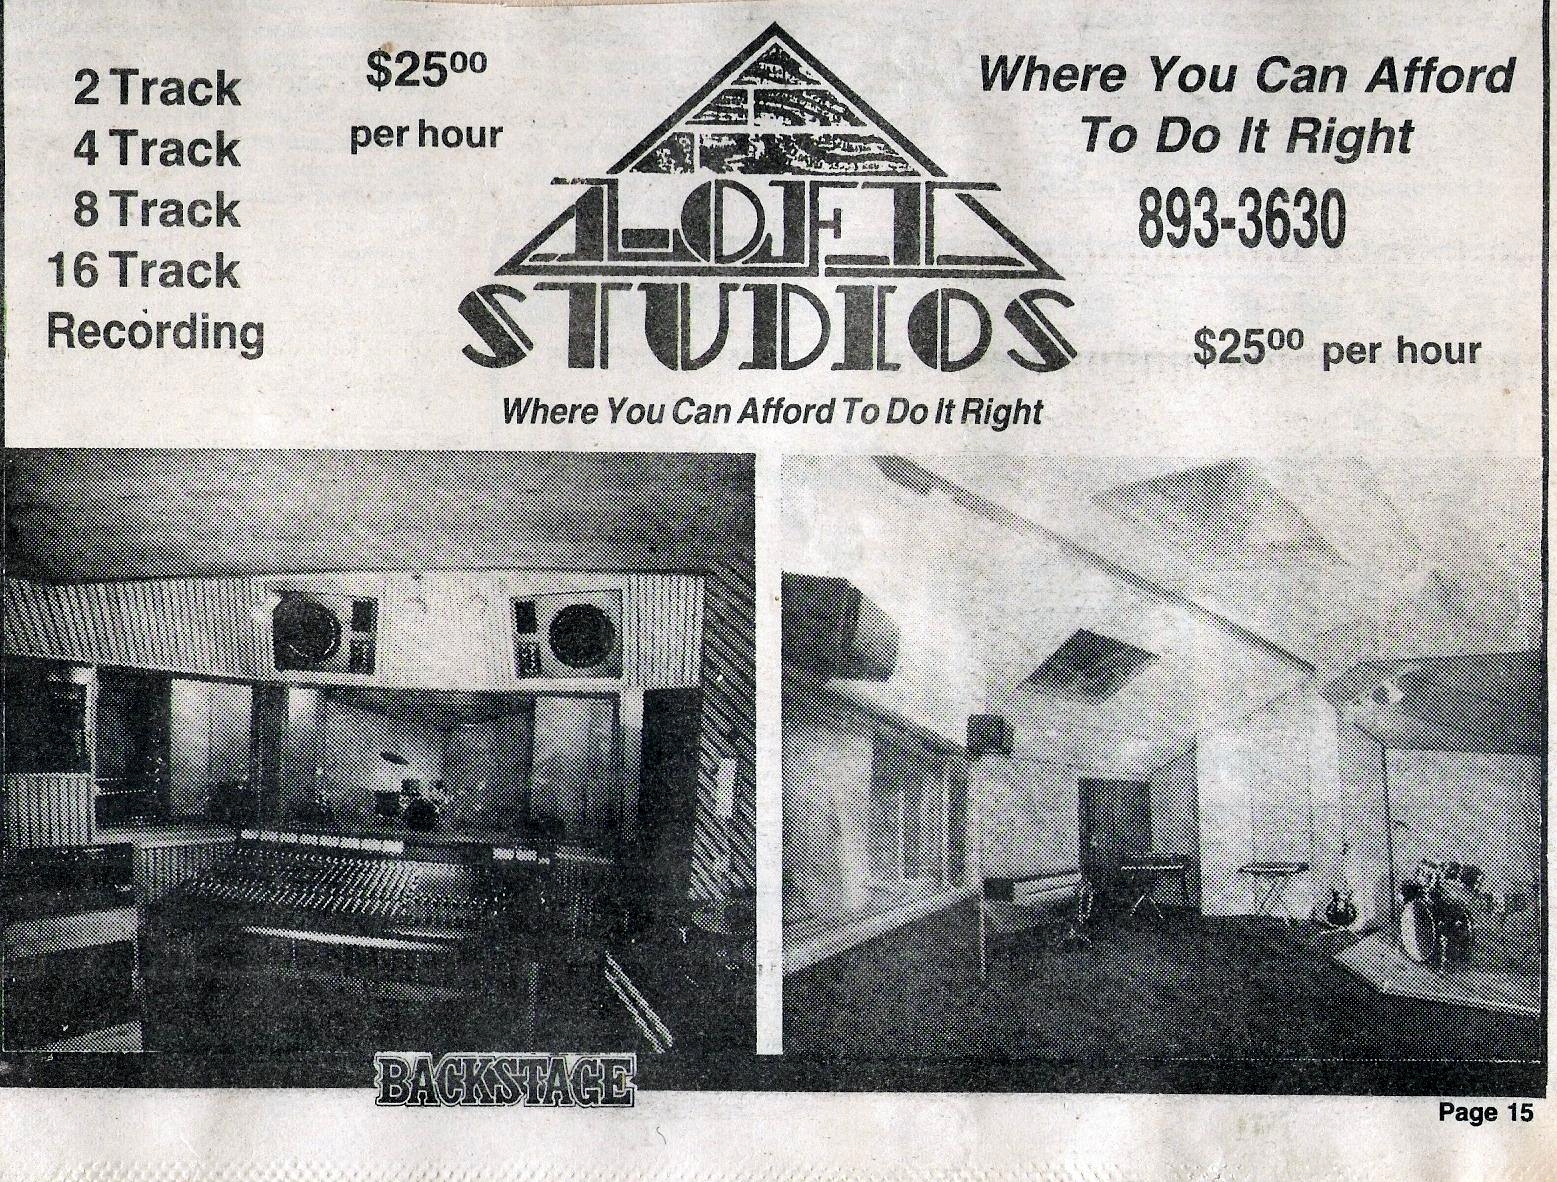 Loft Studios ad 1984